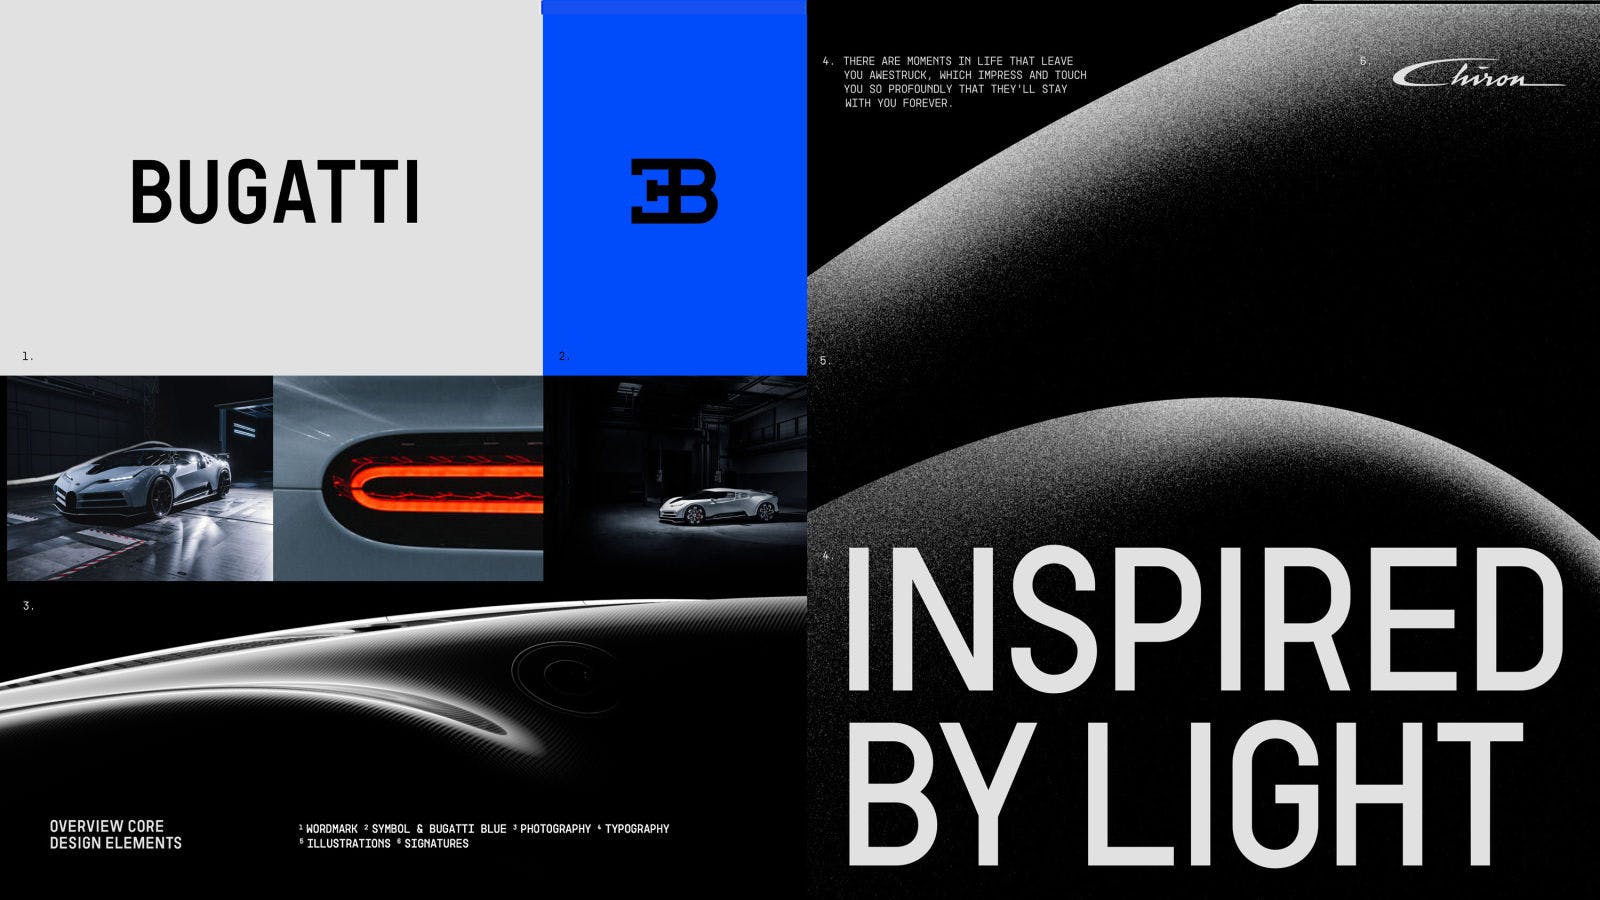 The new vibrant Bugatti Blue references the brand’s French origins and the iconic ‘EB’ logo Ettore Bugatti’s initials.